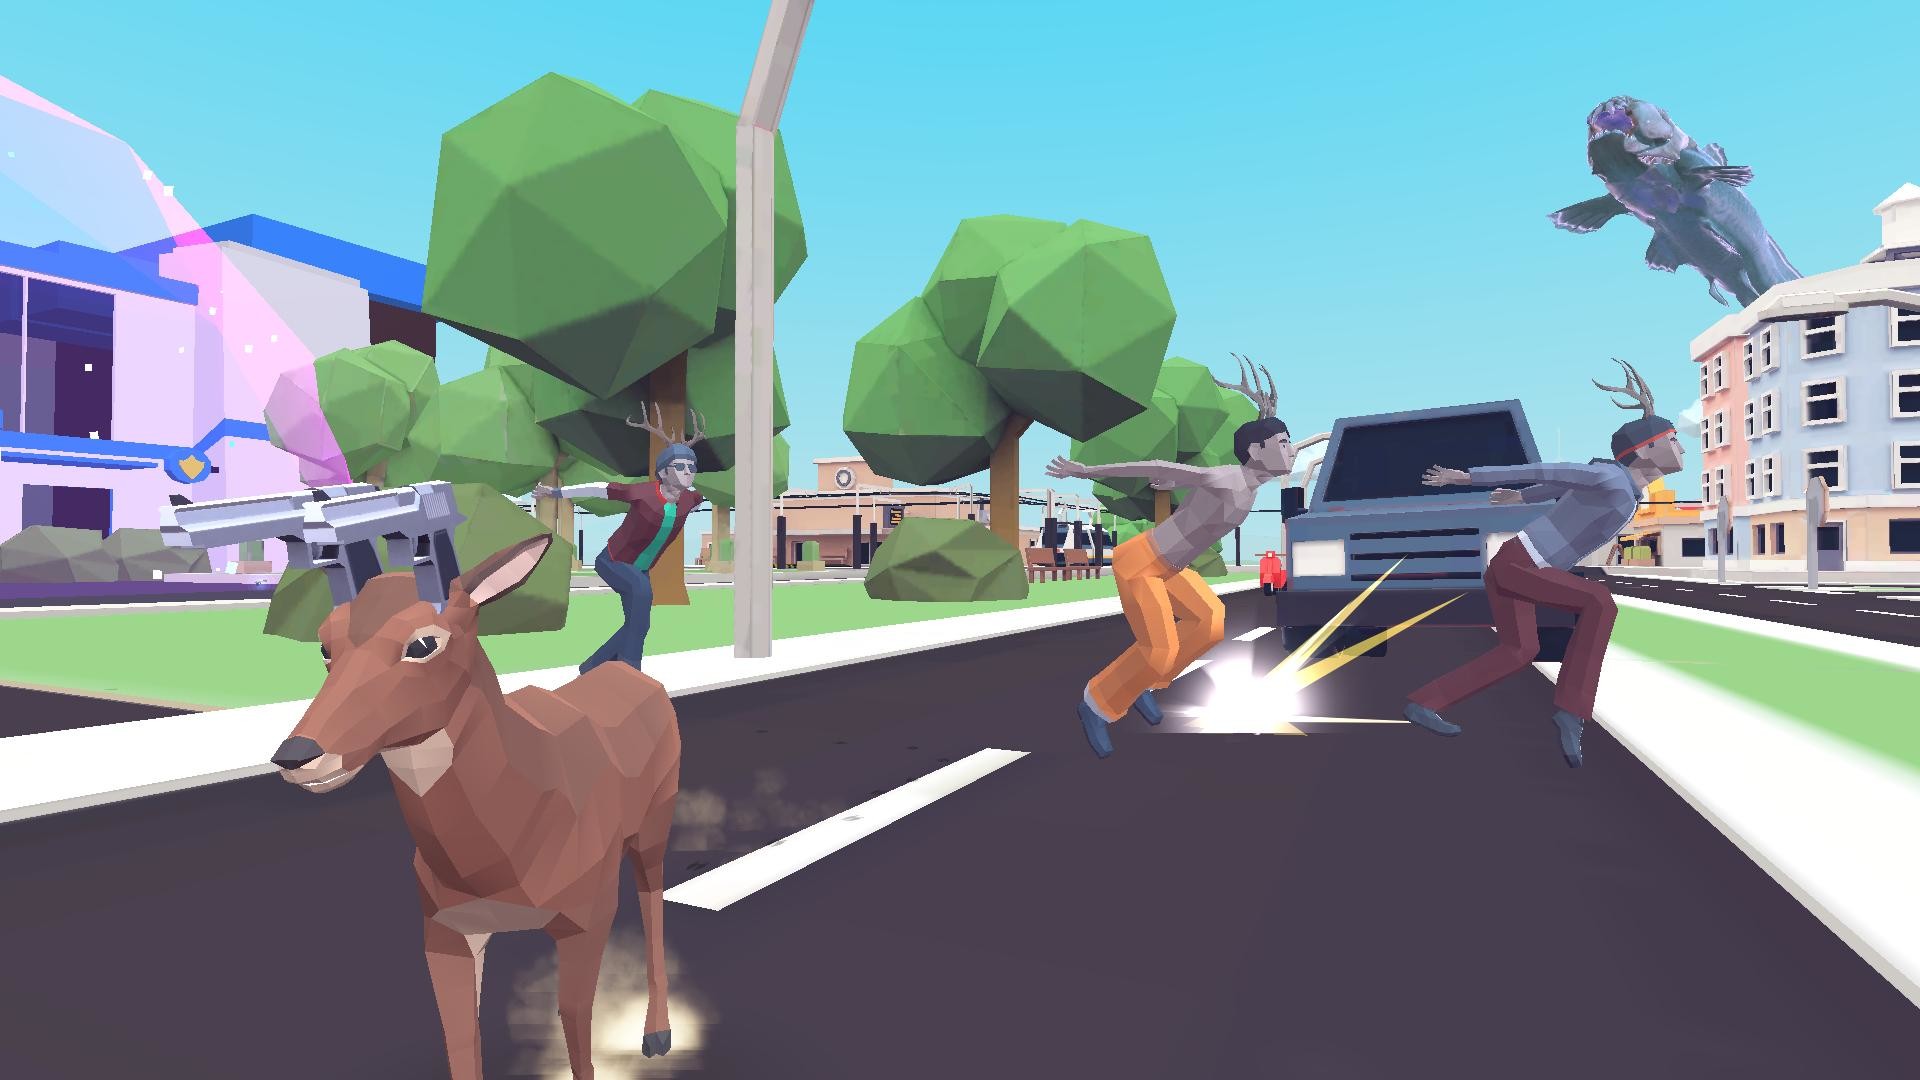 Steam沙雕游戏《非常普通的鹿》新实机演示